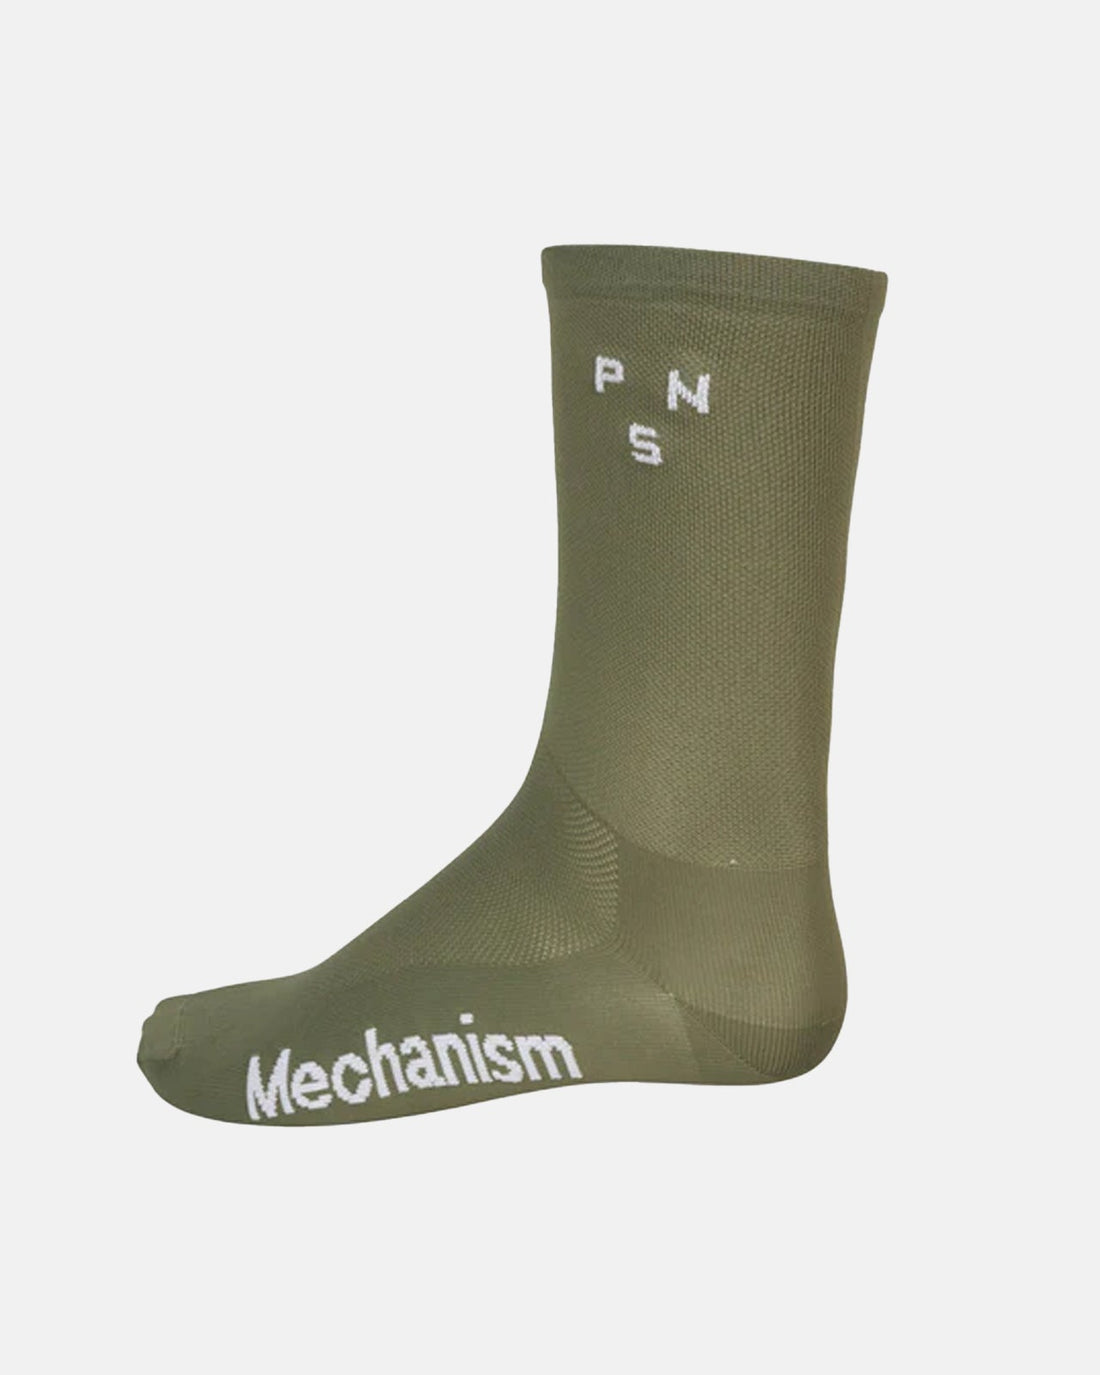 Mechanism Socks - Light Olive